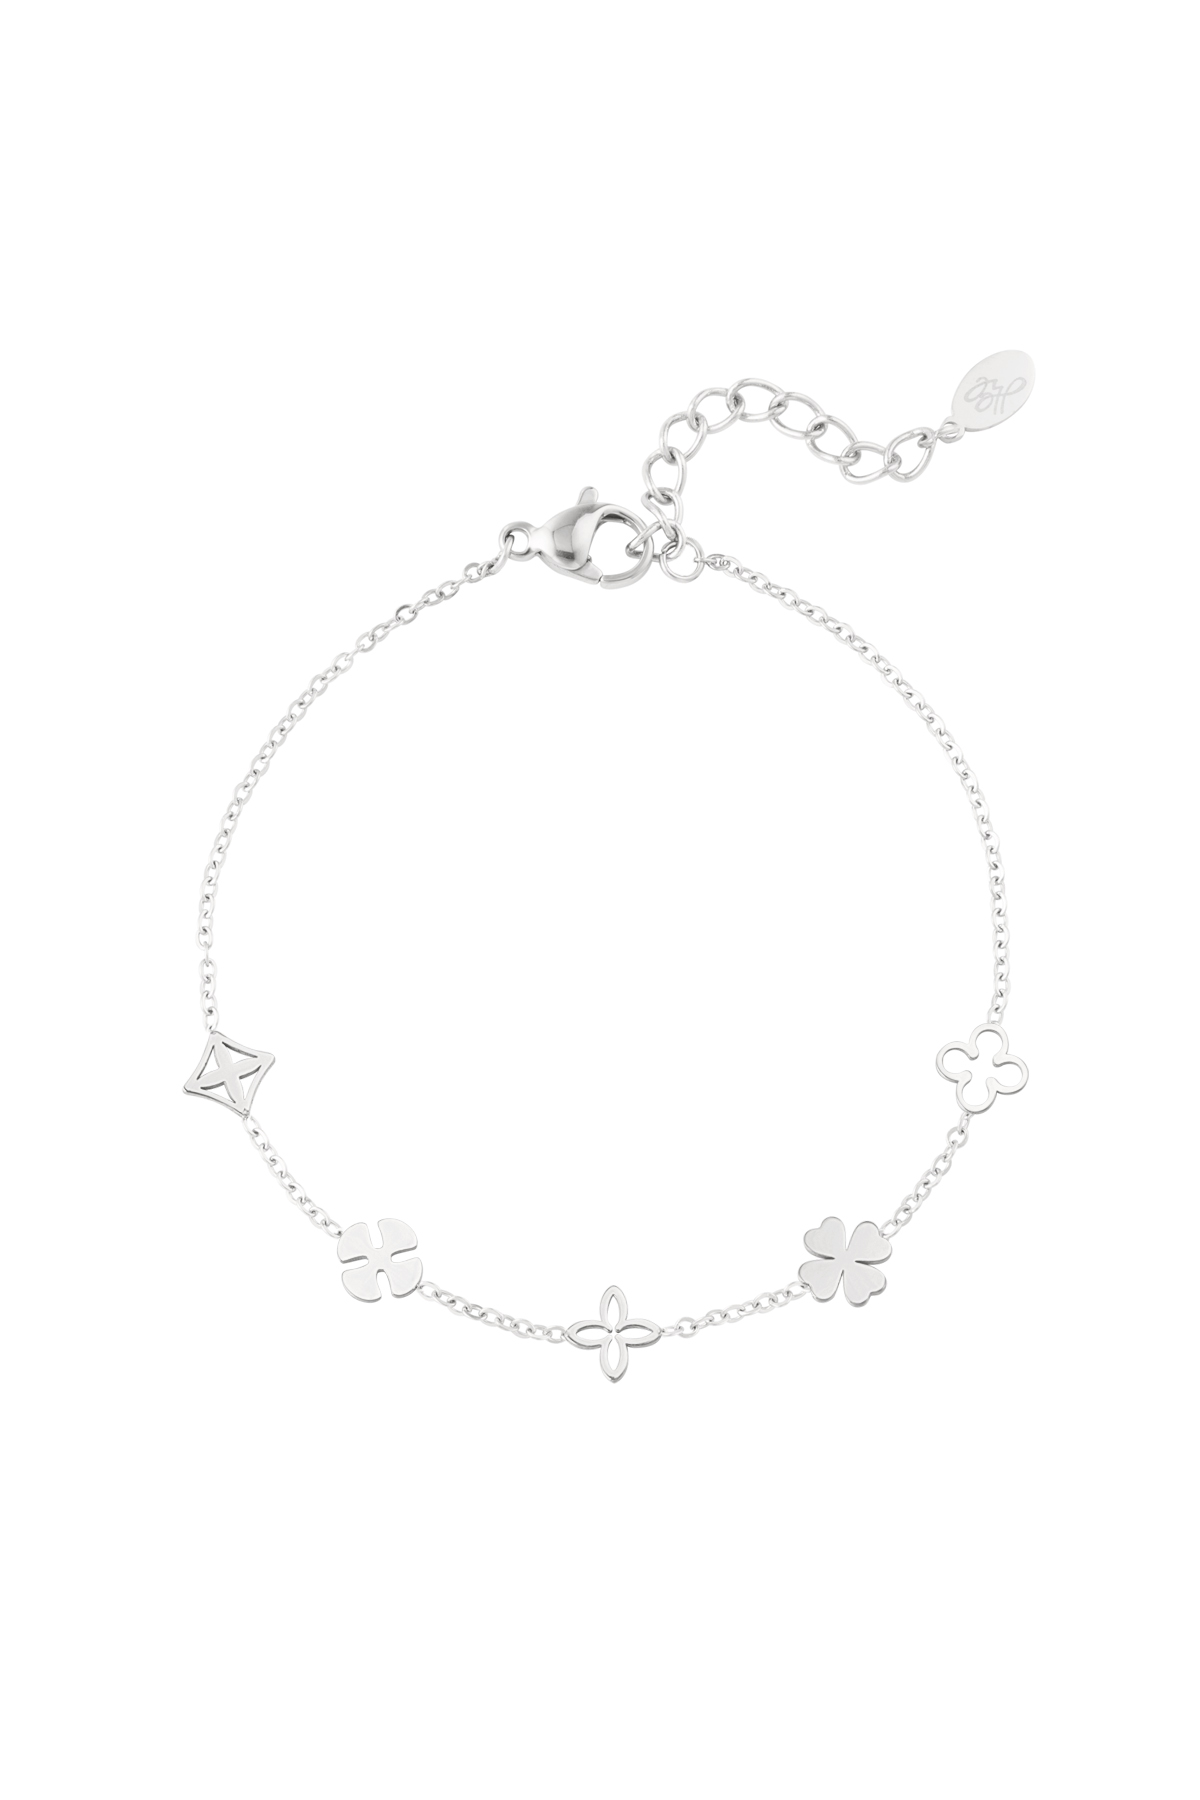 Bracelet five charms - silver h5 